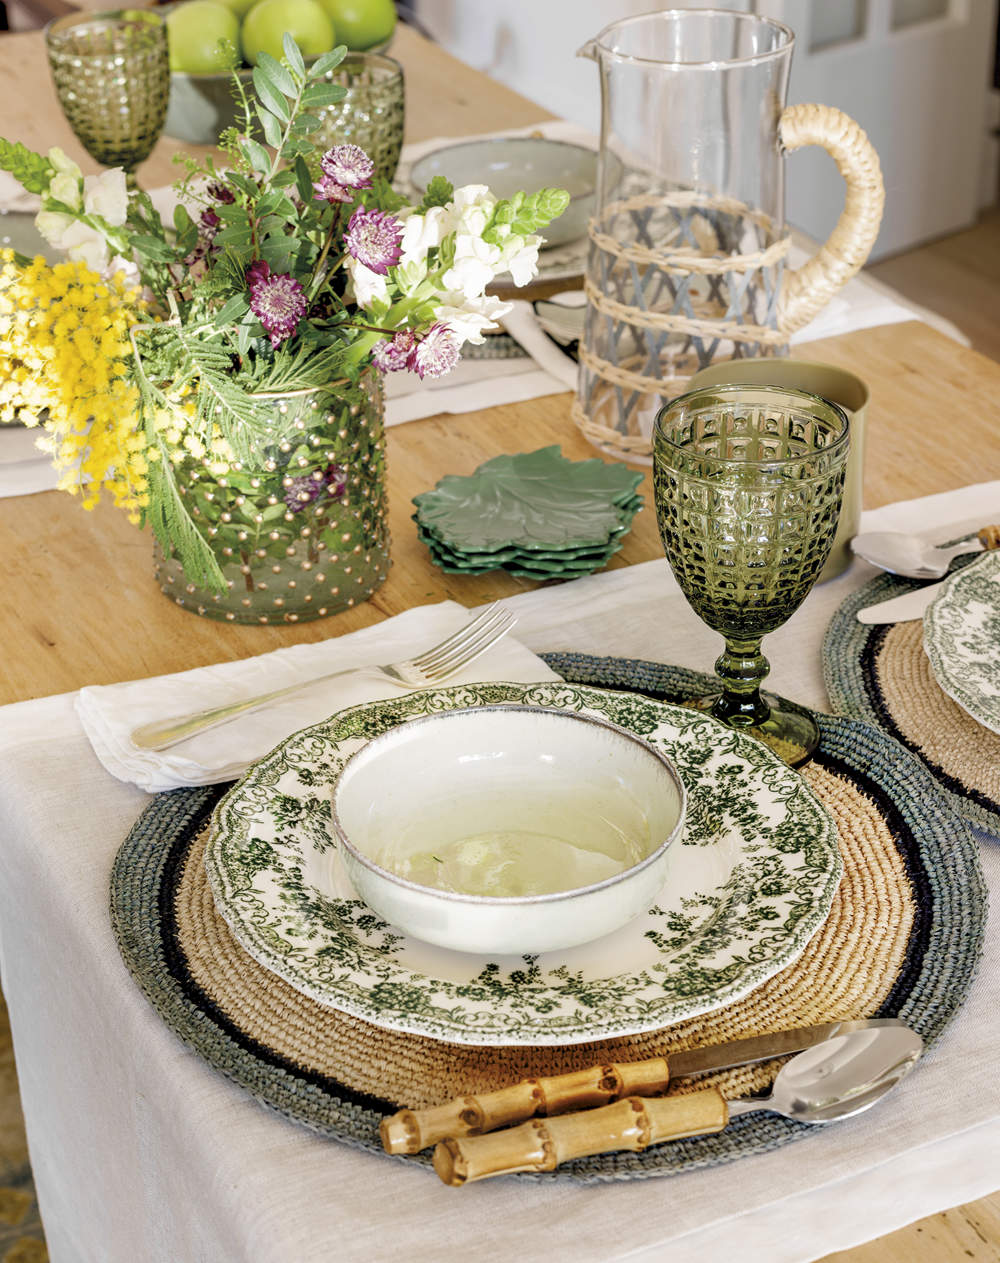 Vajilla verde de cerámica con flores y mantel individual blanco de lino, copa de cristal verde y jarra